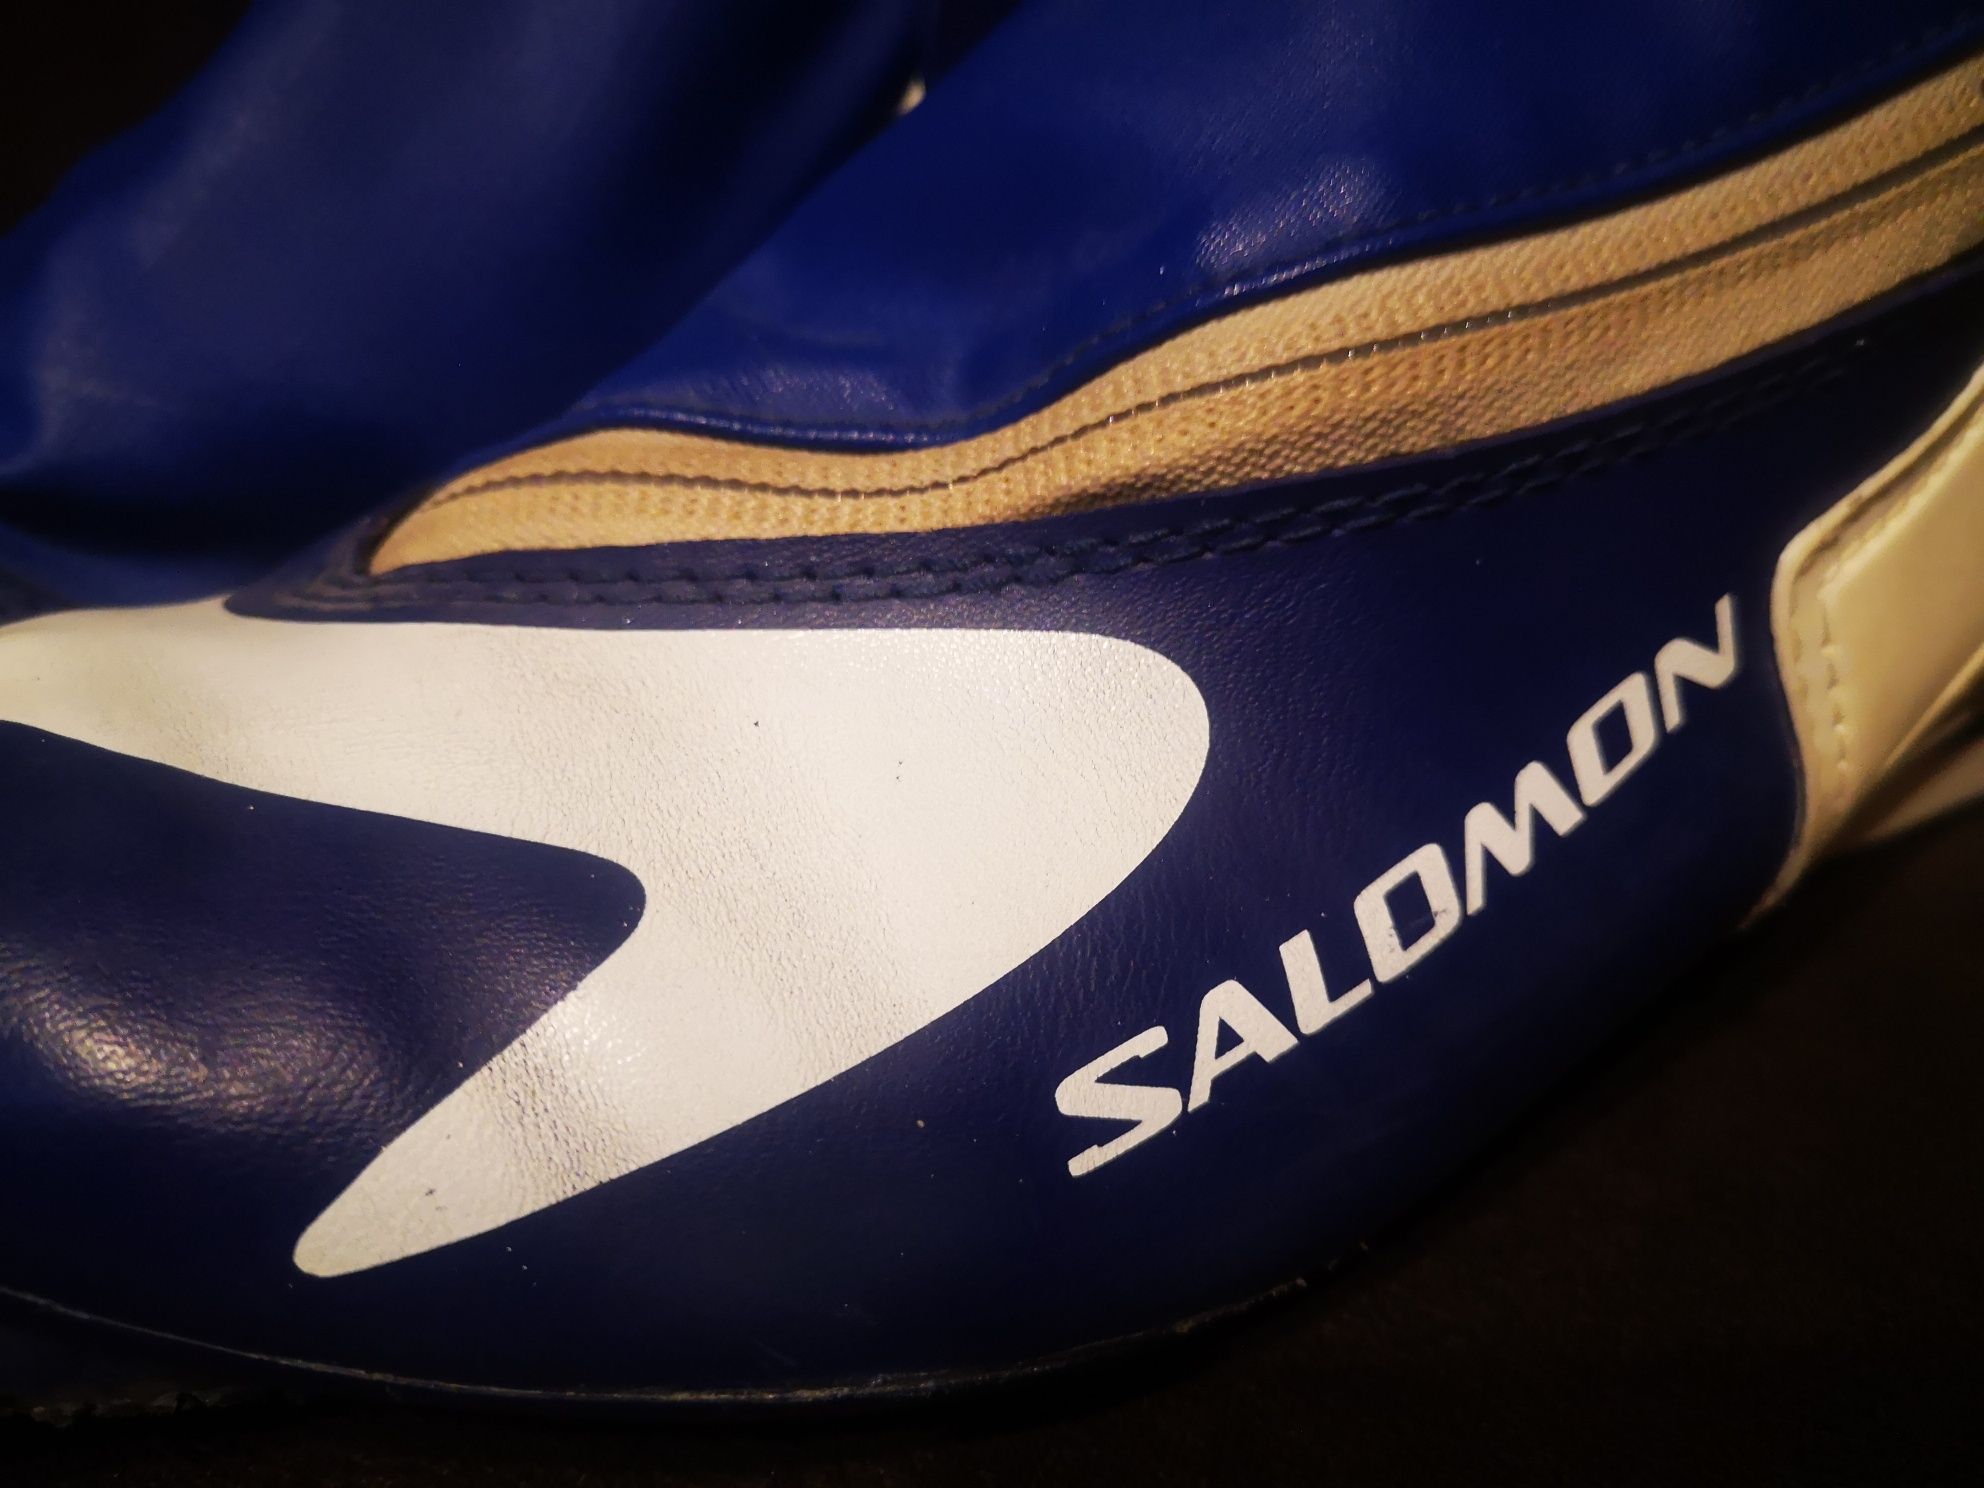 Zestaw narty biegowe  buty Salomon Active 40 SNS Profil